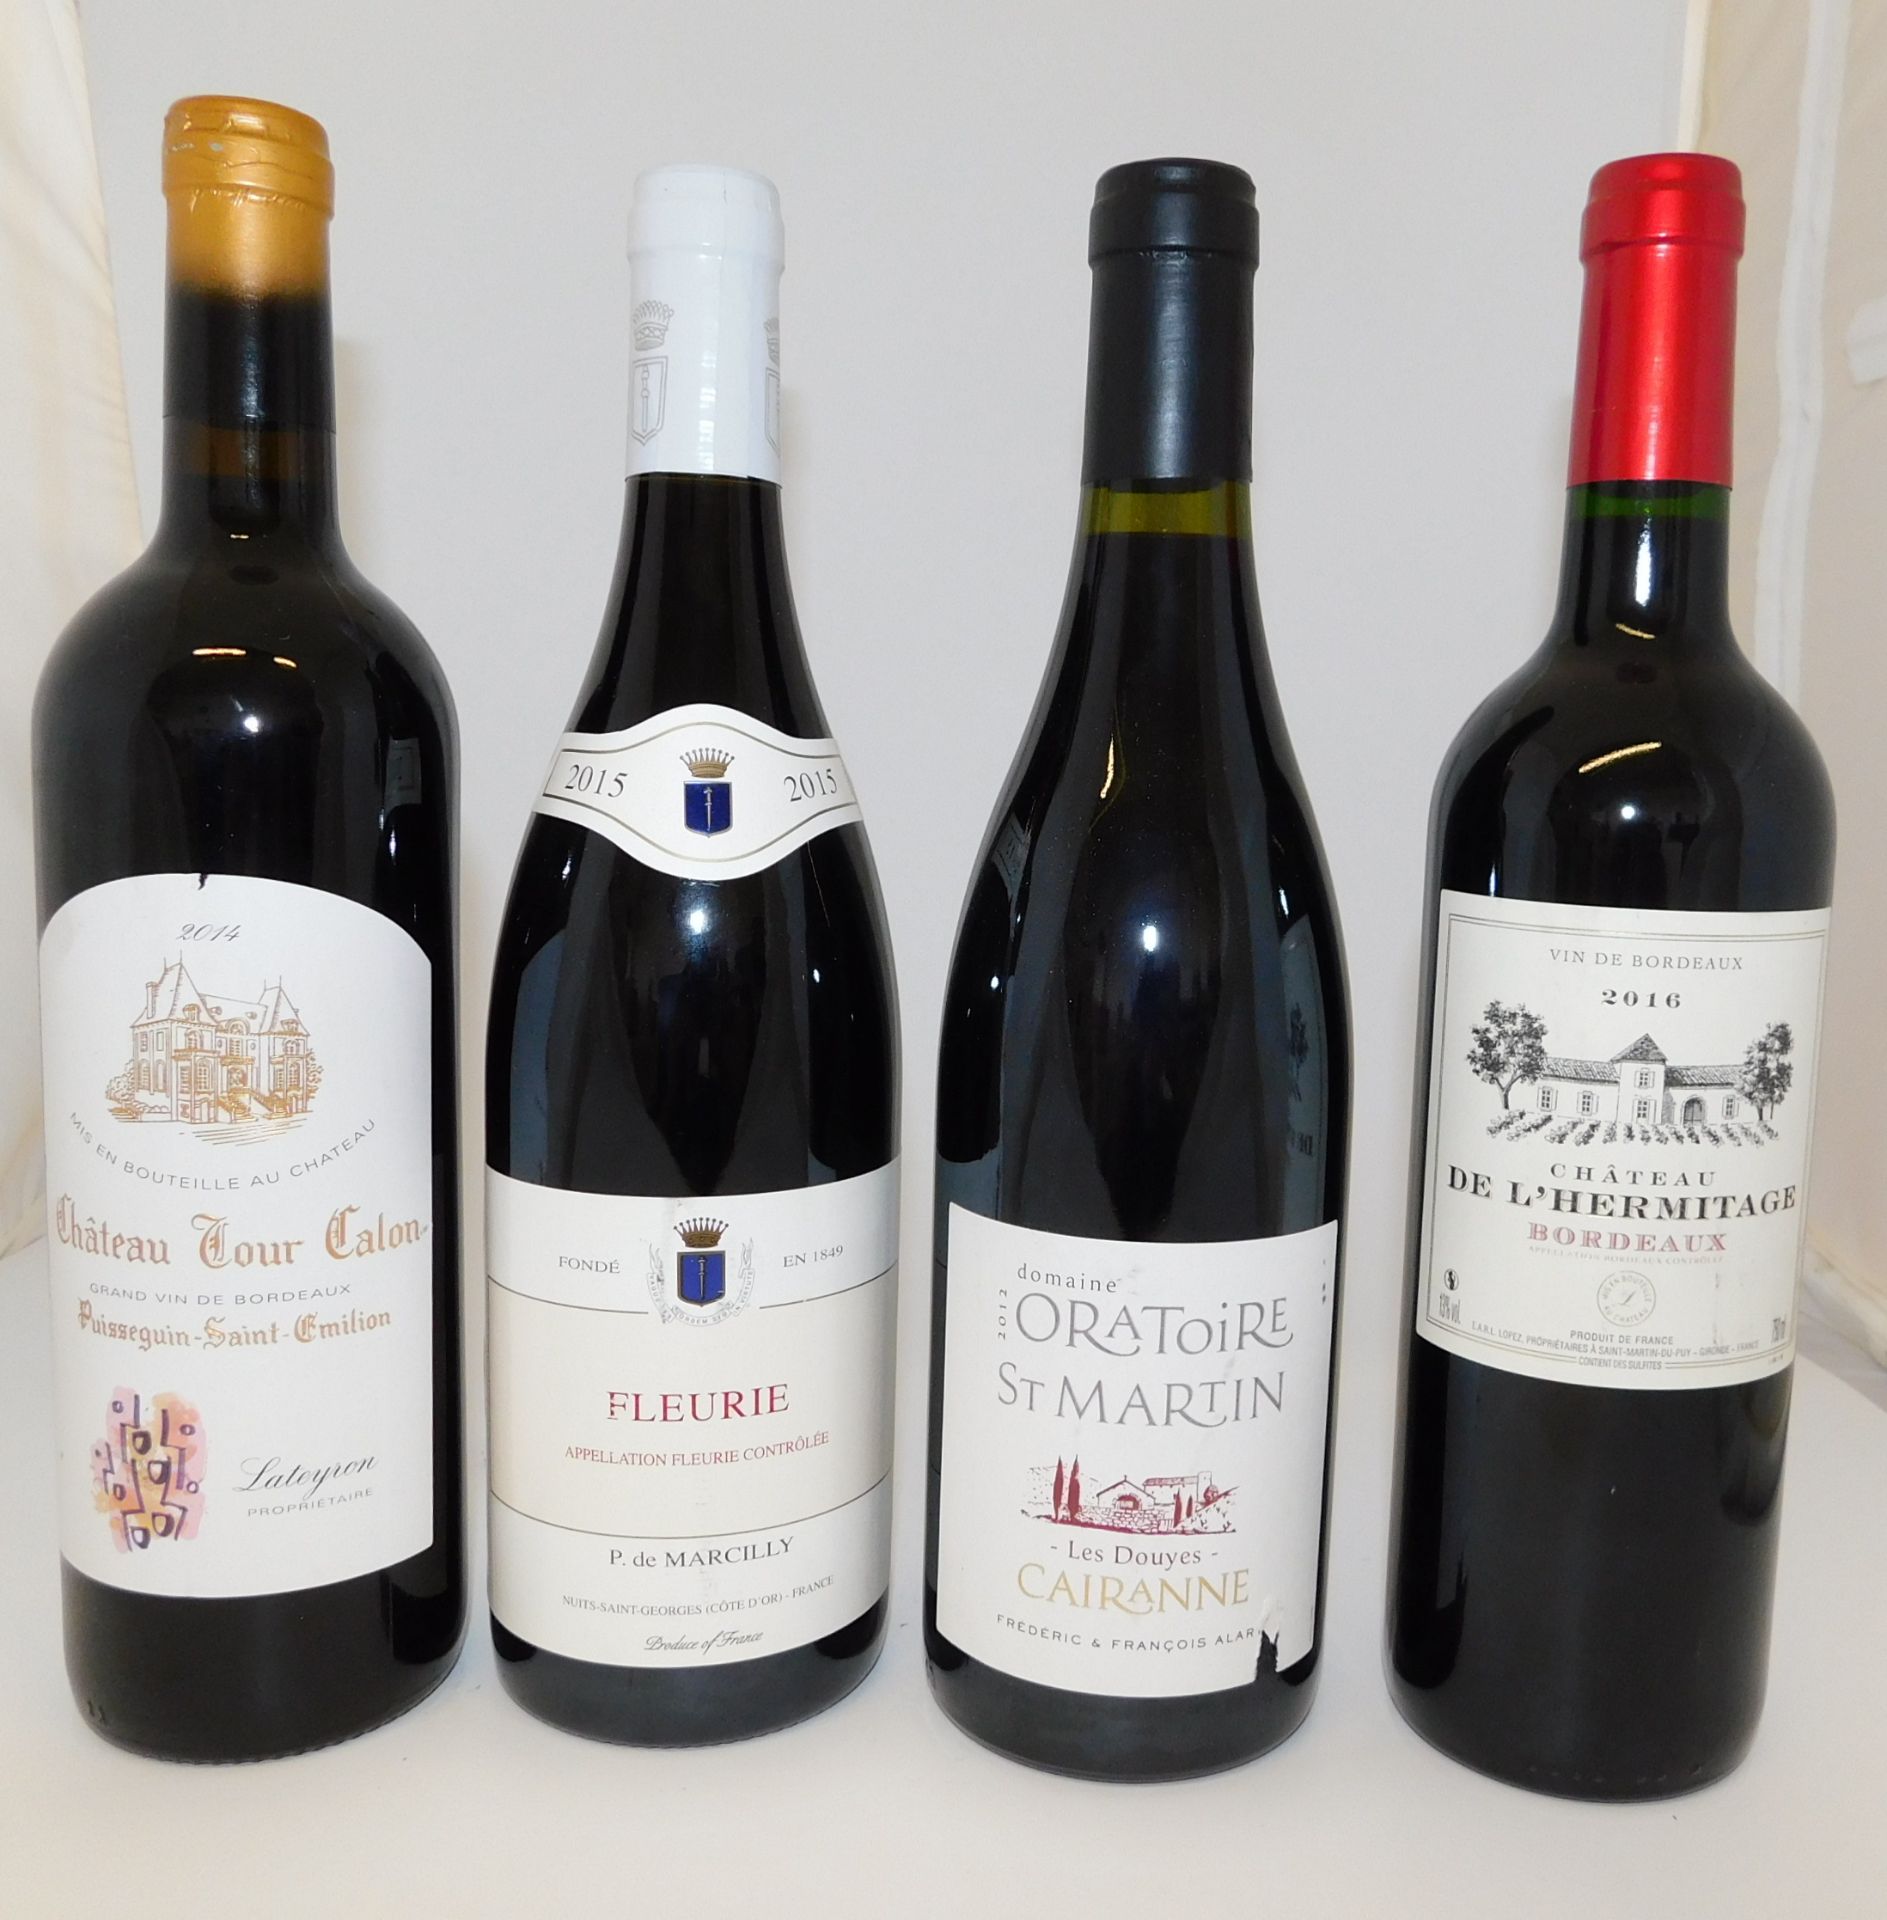 30 Bottles to Include 12 Chateau Tour Talon Pisseguin-Saint-Emilion, 750ml, 6 P.de Marcilly Fleurie,